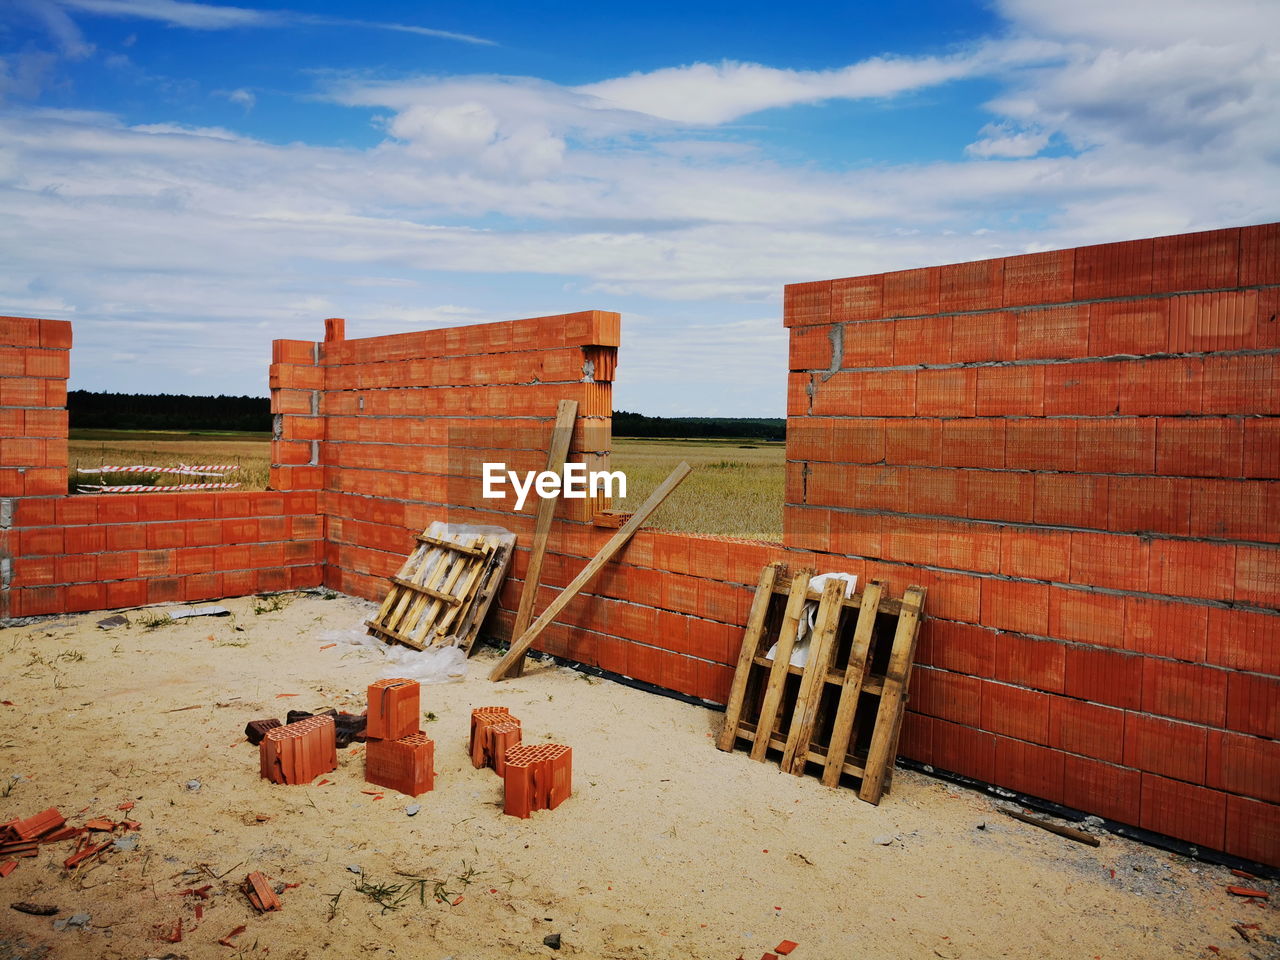 Building a brick wall. brick walls.